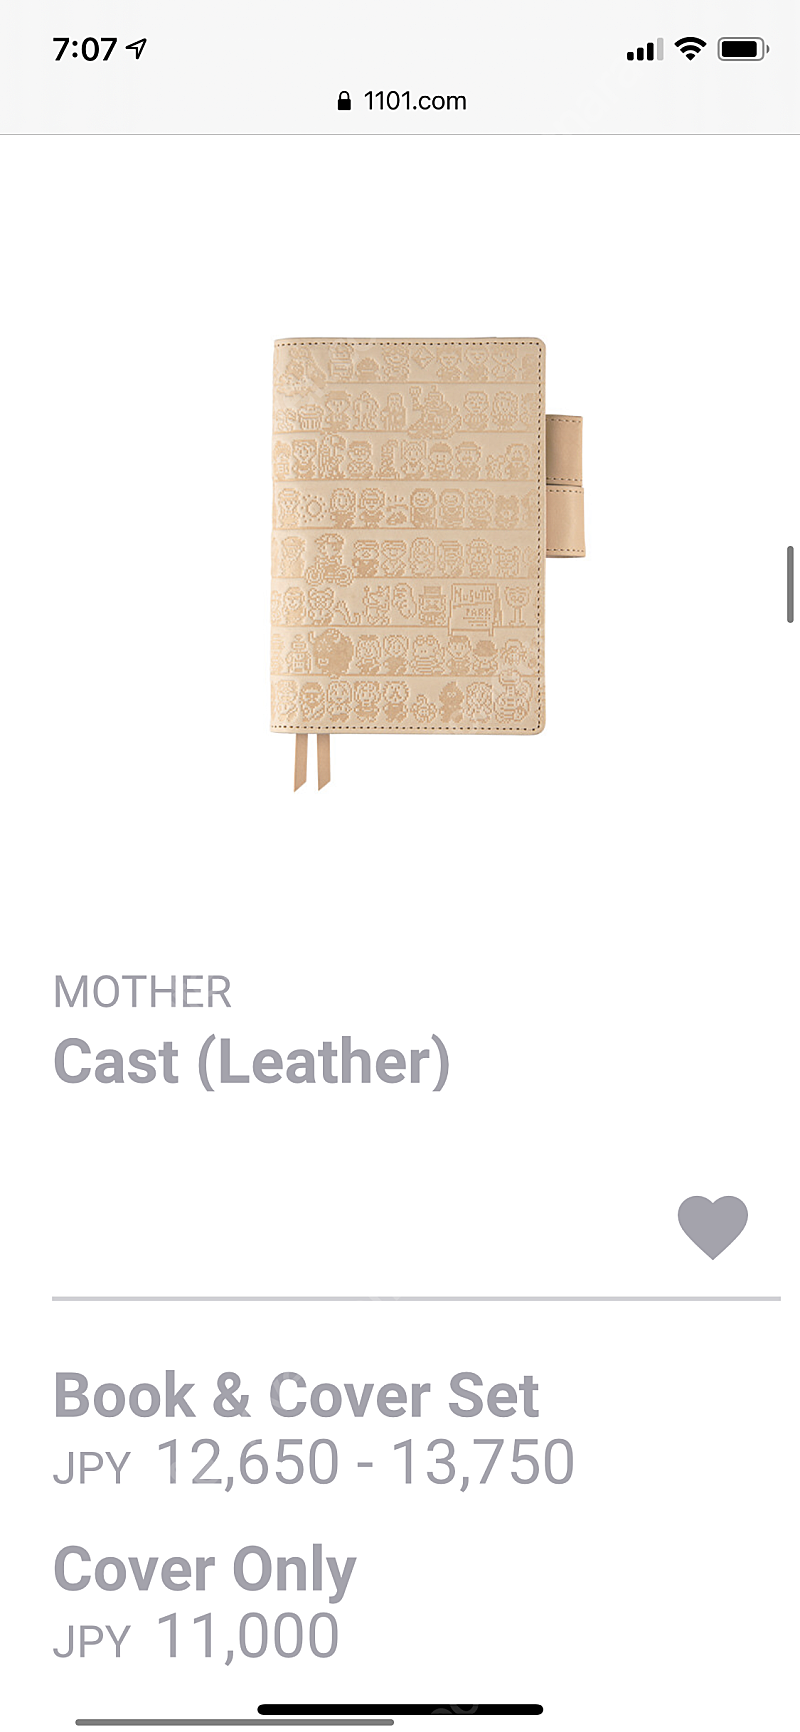 [삽니다] 호보니치 테쵸 mother cast (leather) 커버